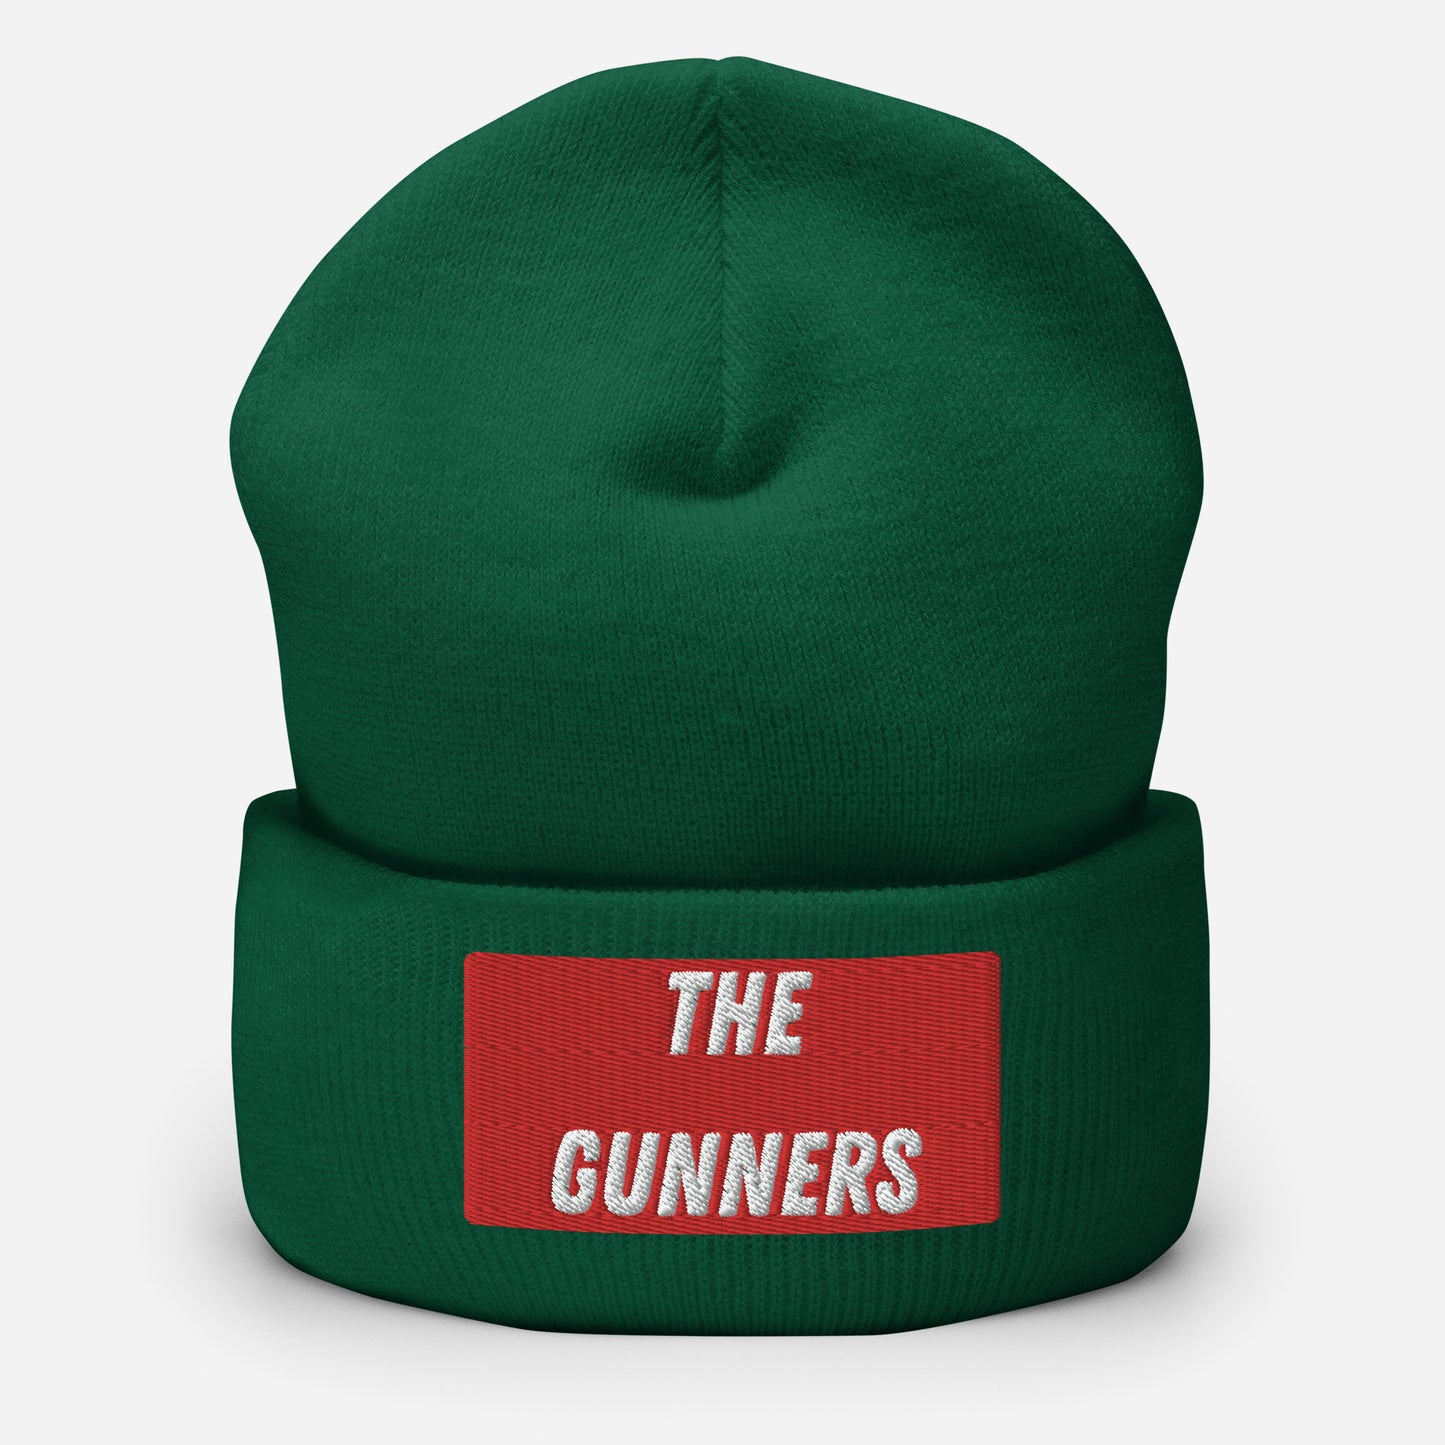 The Gunners Cuffed Beanie Hat